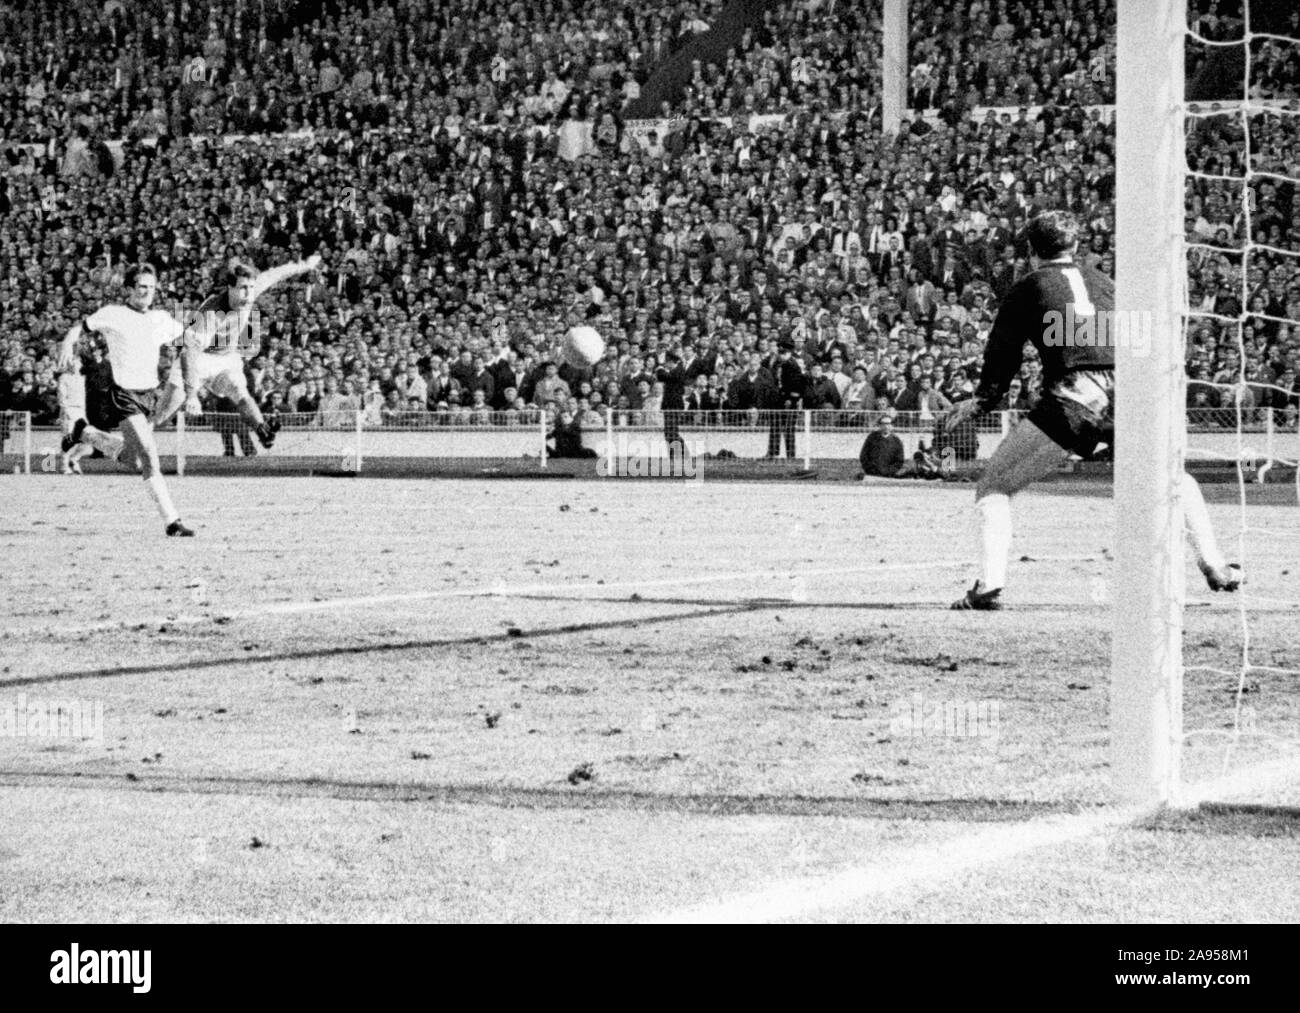 File foto datata 30-07-1966 di Inghilterra del Geoff Hurst crepe un colpo passato portiere tedesco Hans Tilkowski al cliente la meta finale della Coppa del Mondo in finale contro la Germania Ovest a Wembley. Foto Stock